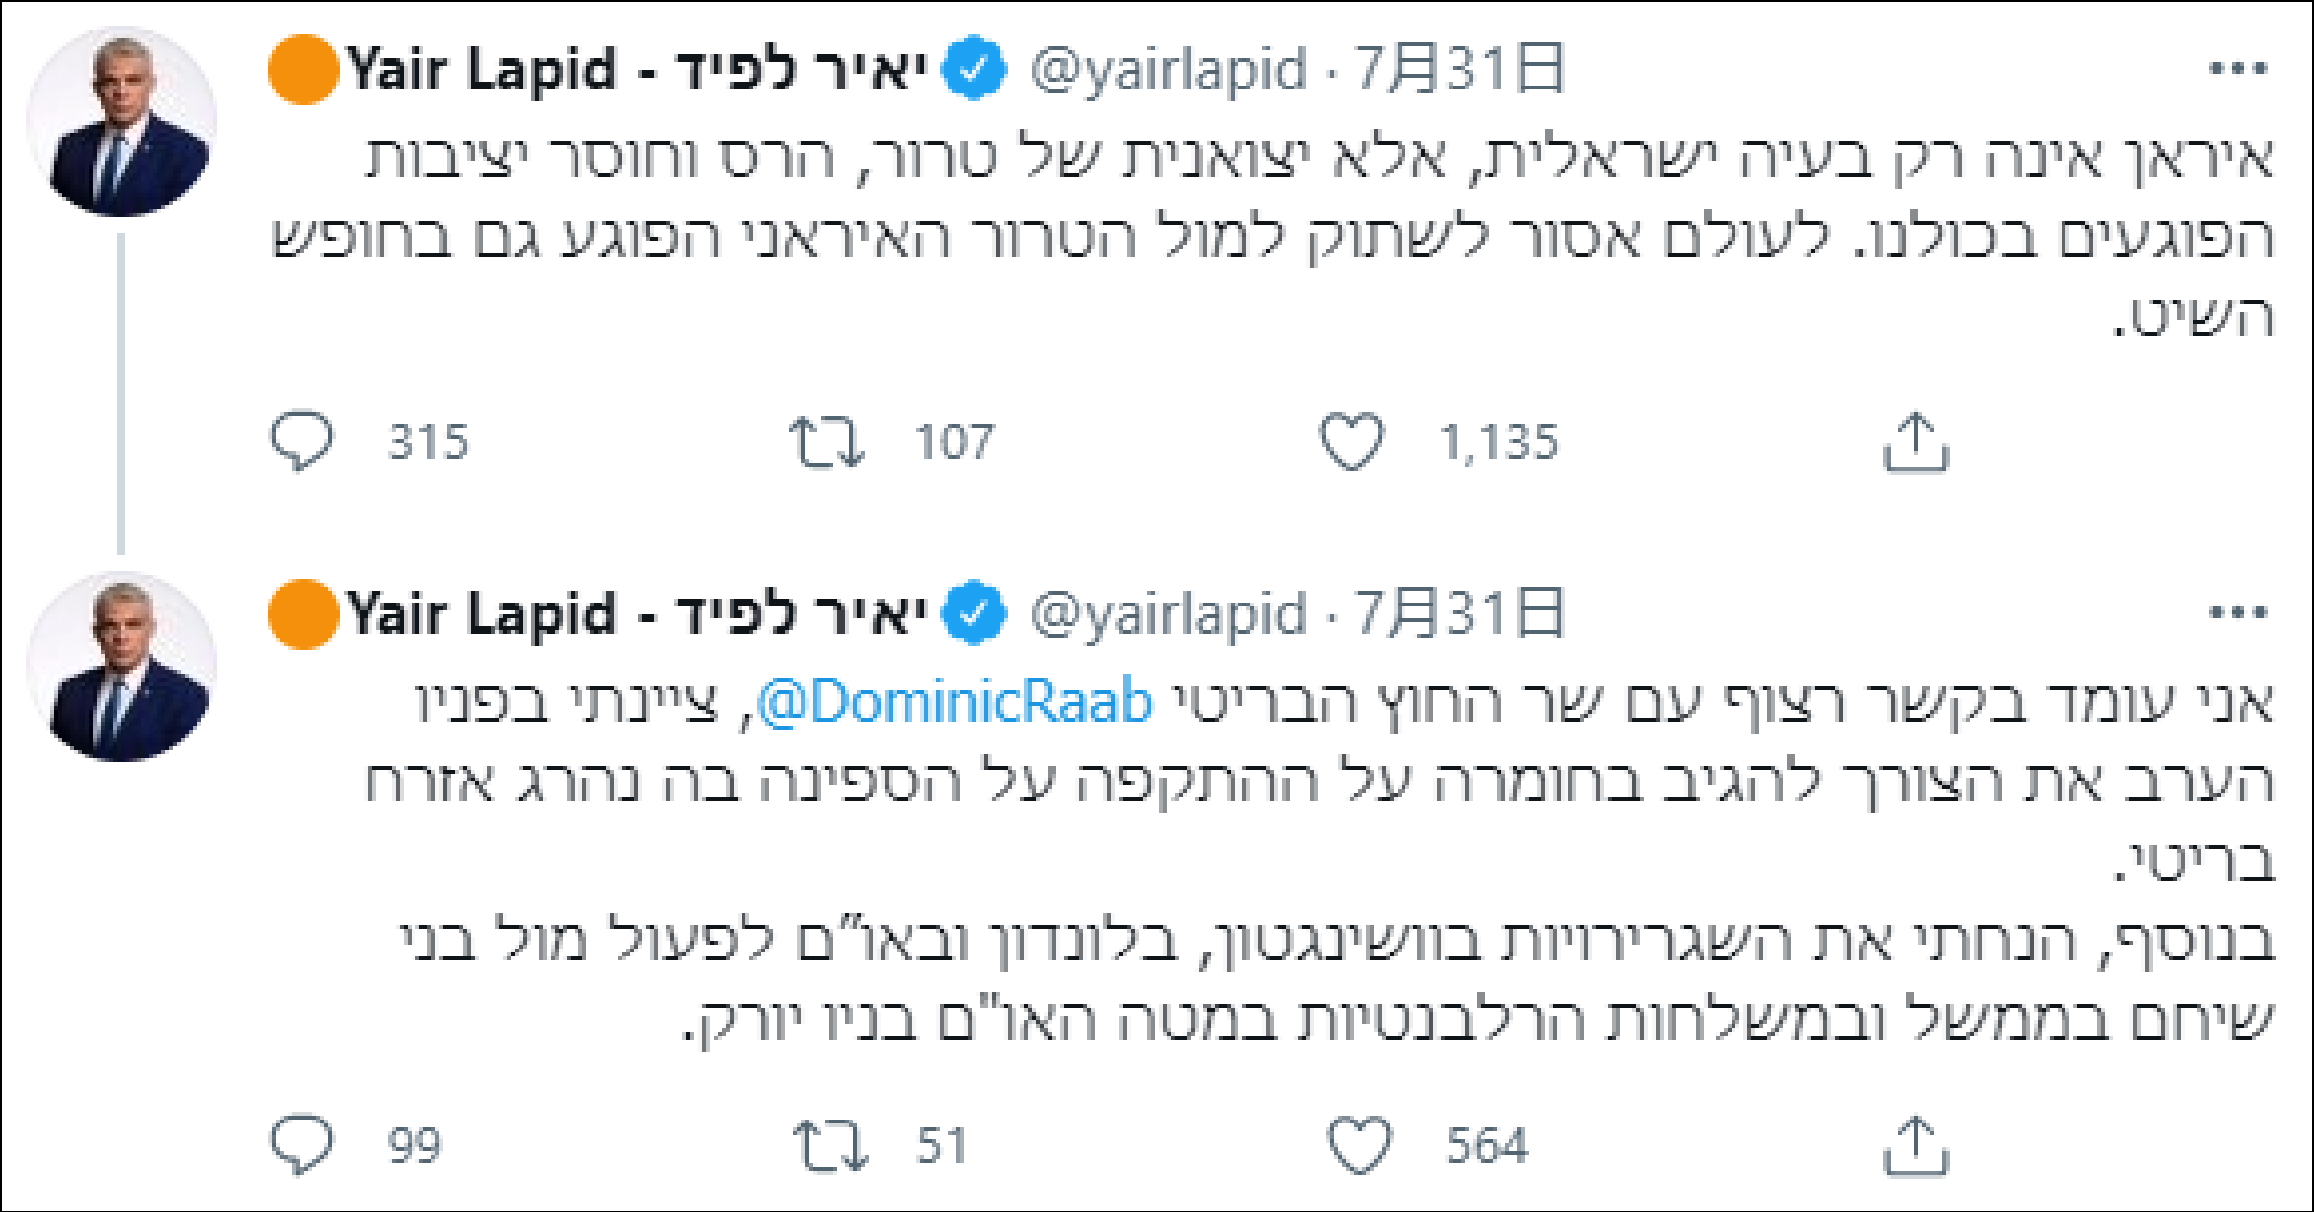 以色列外长亚伊尔·拉皮德社交媒体截图